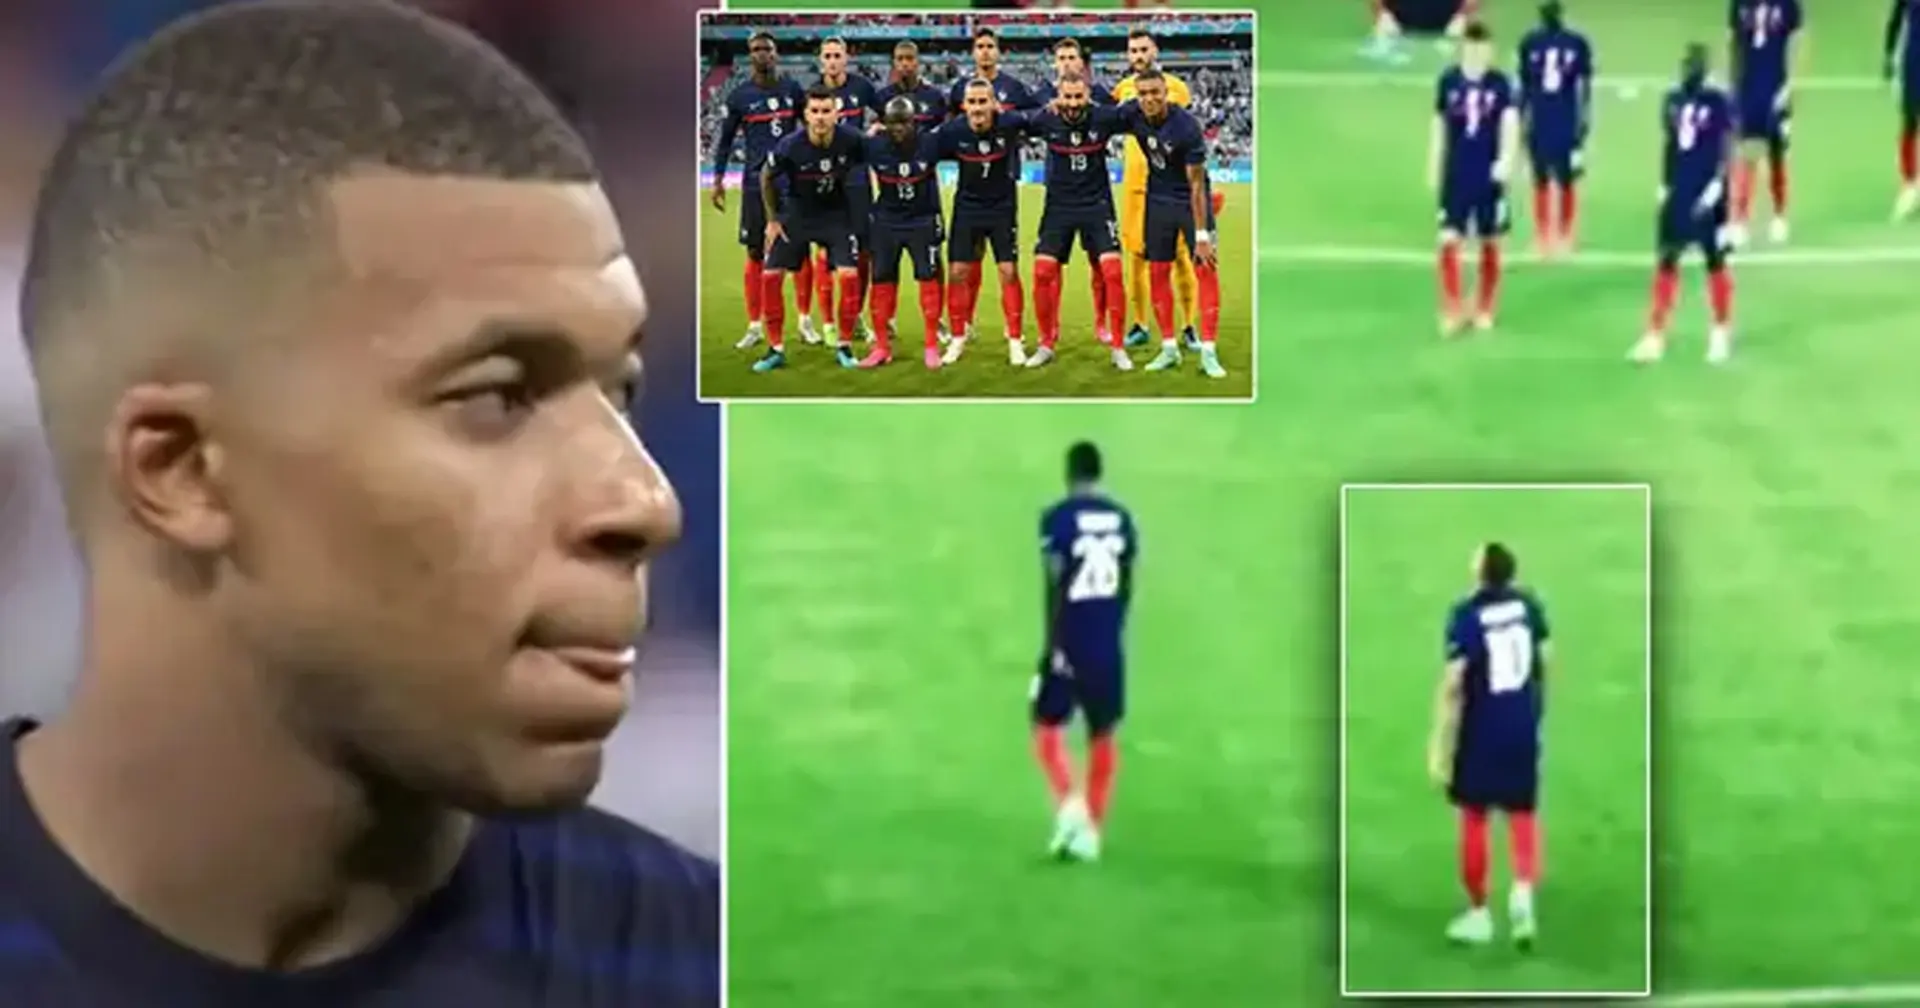 Solo un jugador de Francia fue a consolar a Kylian Mbappé antes de bajar por el túnel